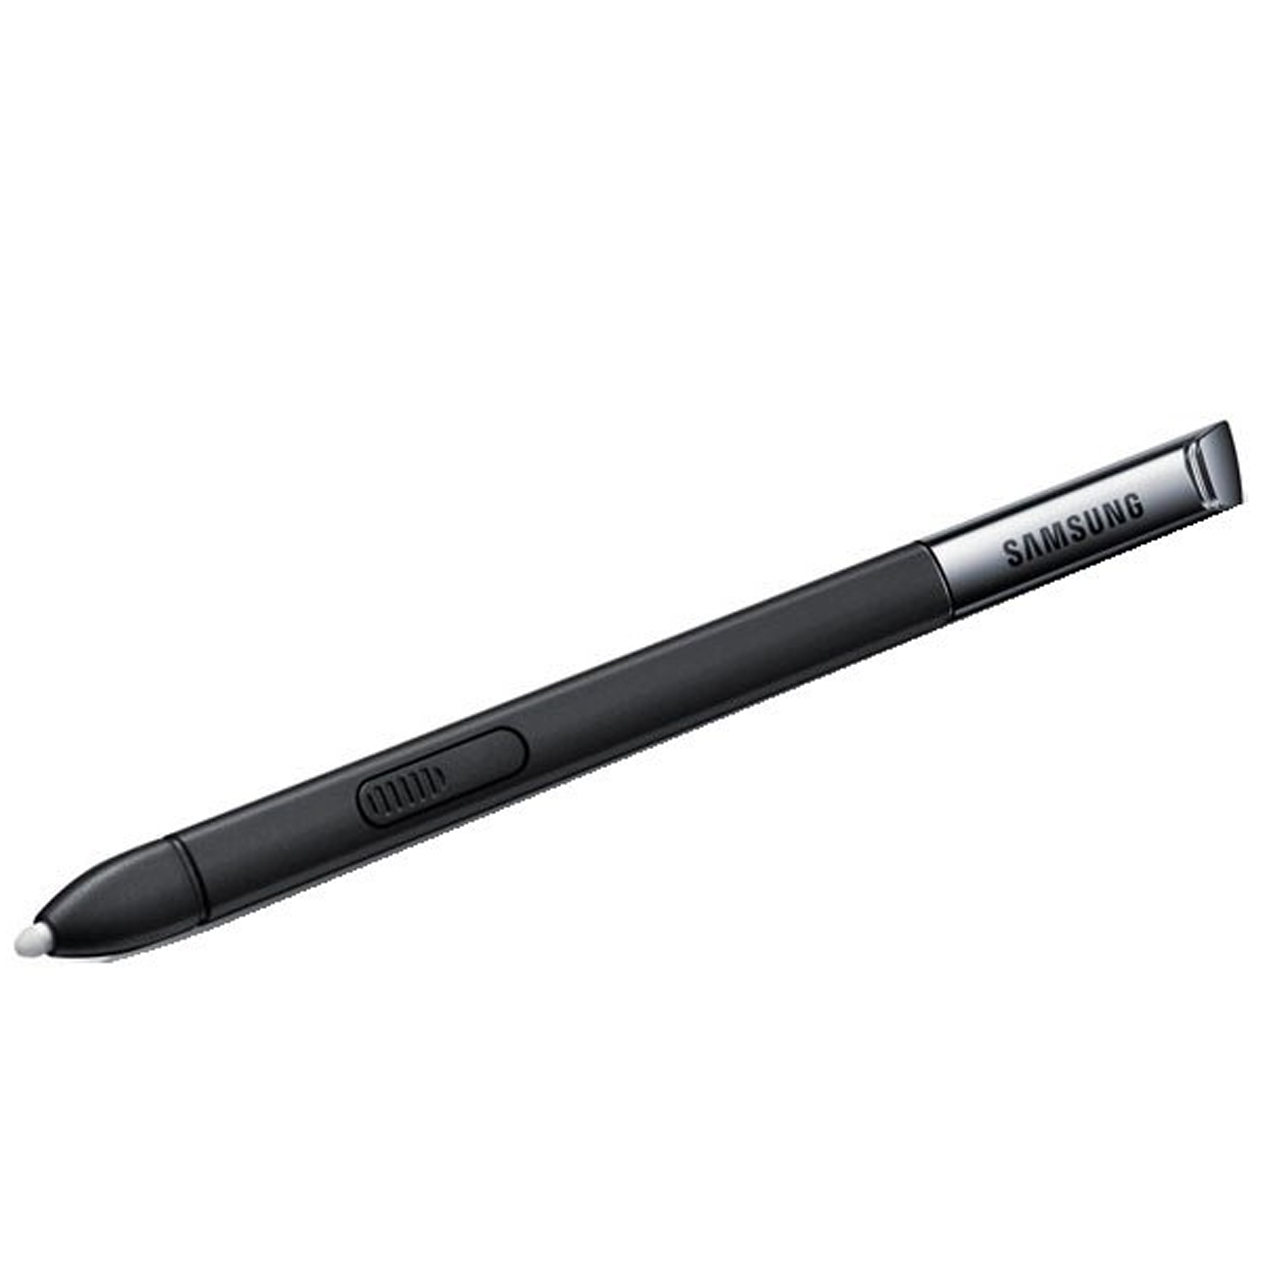 قلم لمسی مدل S Pen مناسب برای Galaxy Note                     غیر اصل